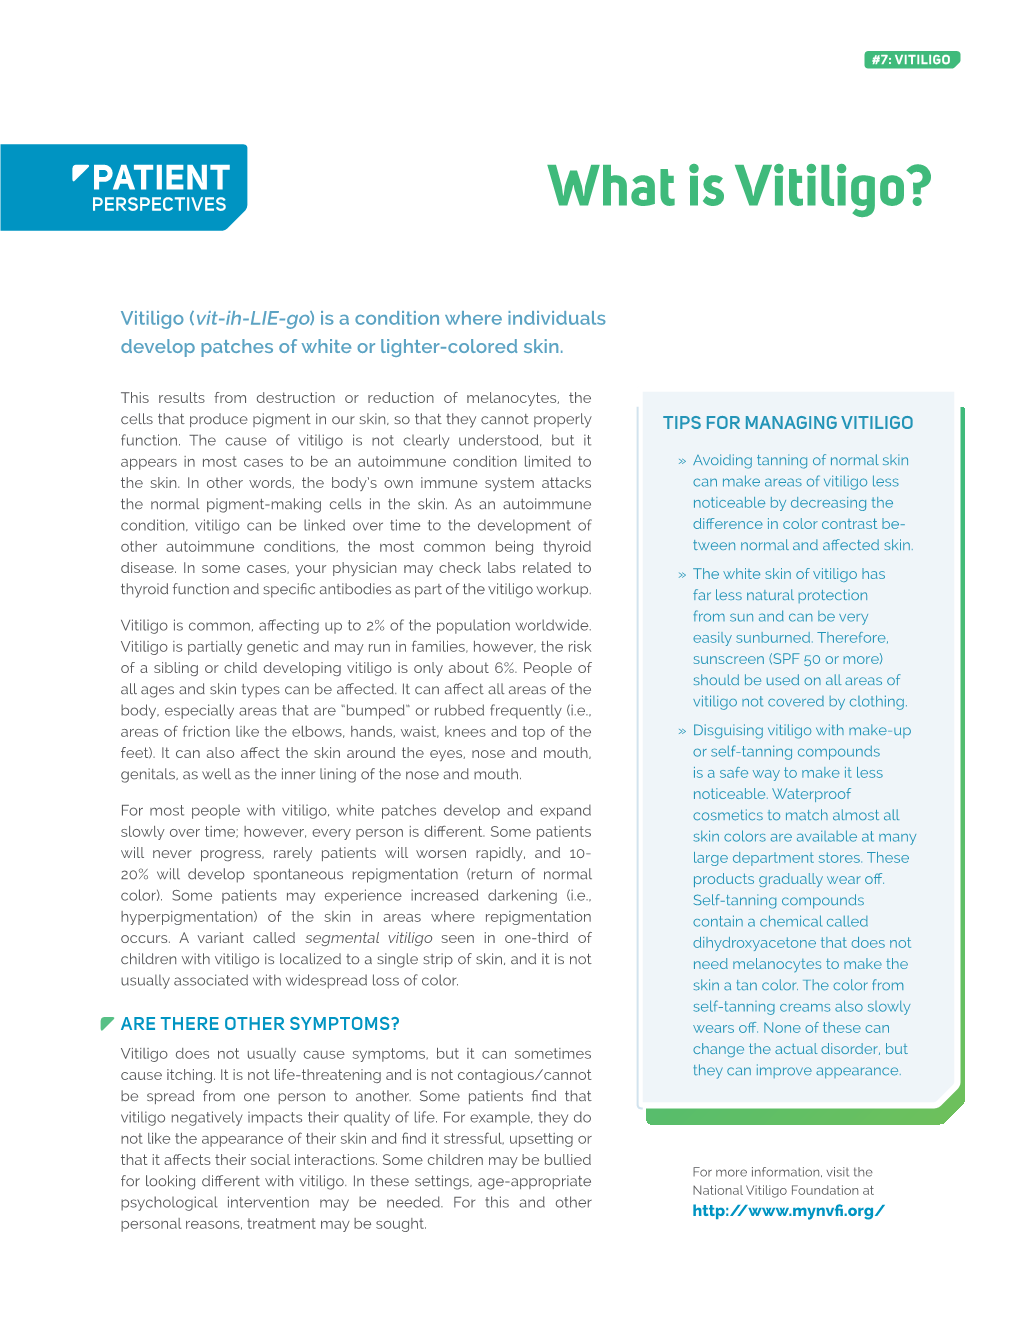 Vitiligo Handout